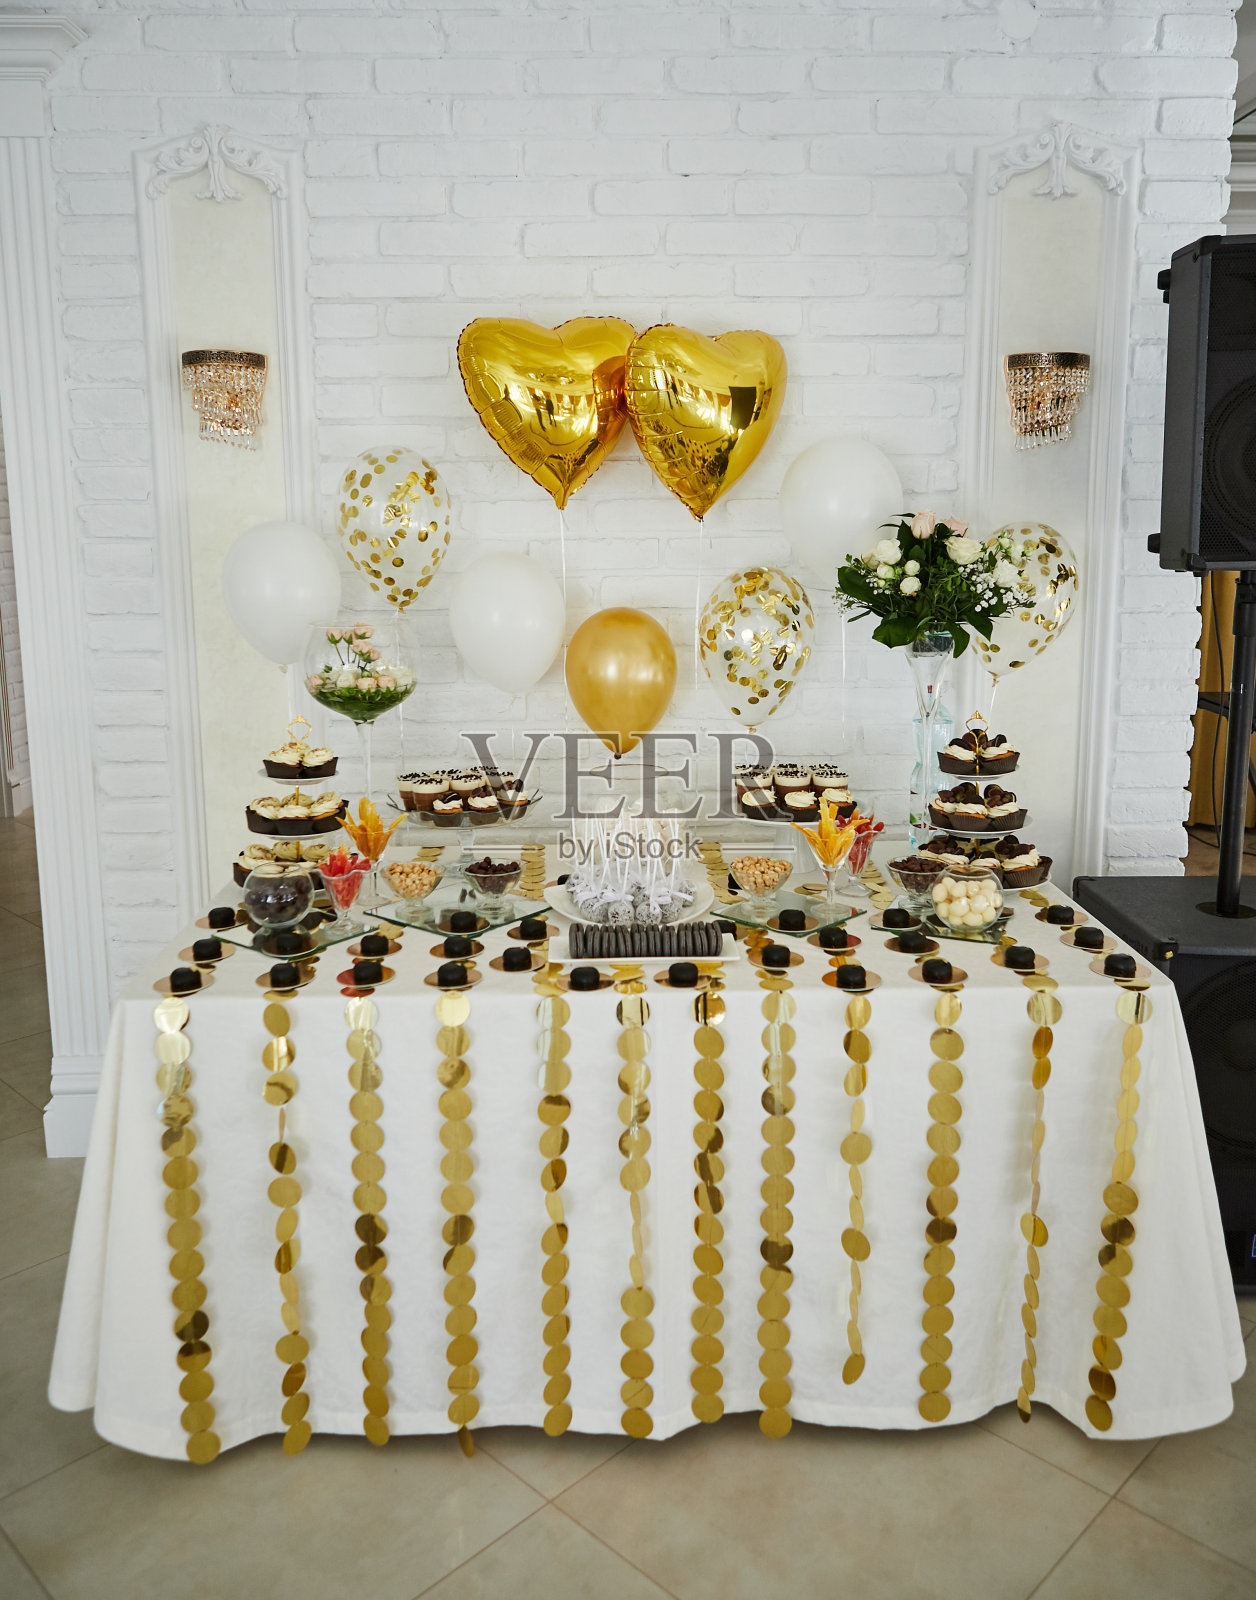 糖果棒装饰美味的甜自助餐纸杯蛋糕和其他甜点/糖果，生日快乐的概念照片摄影图片